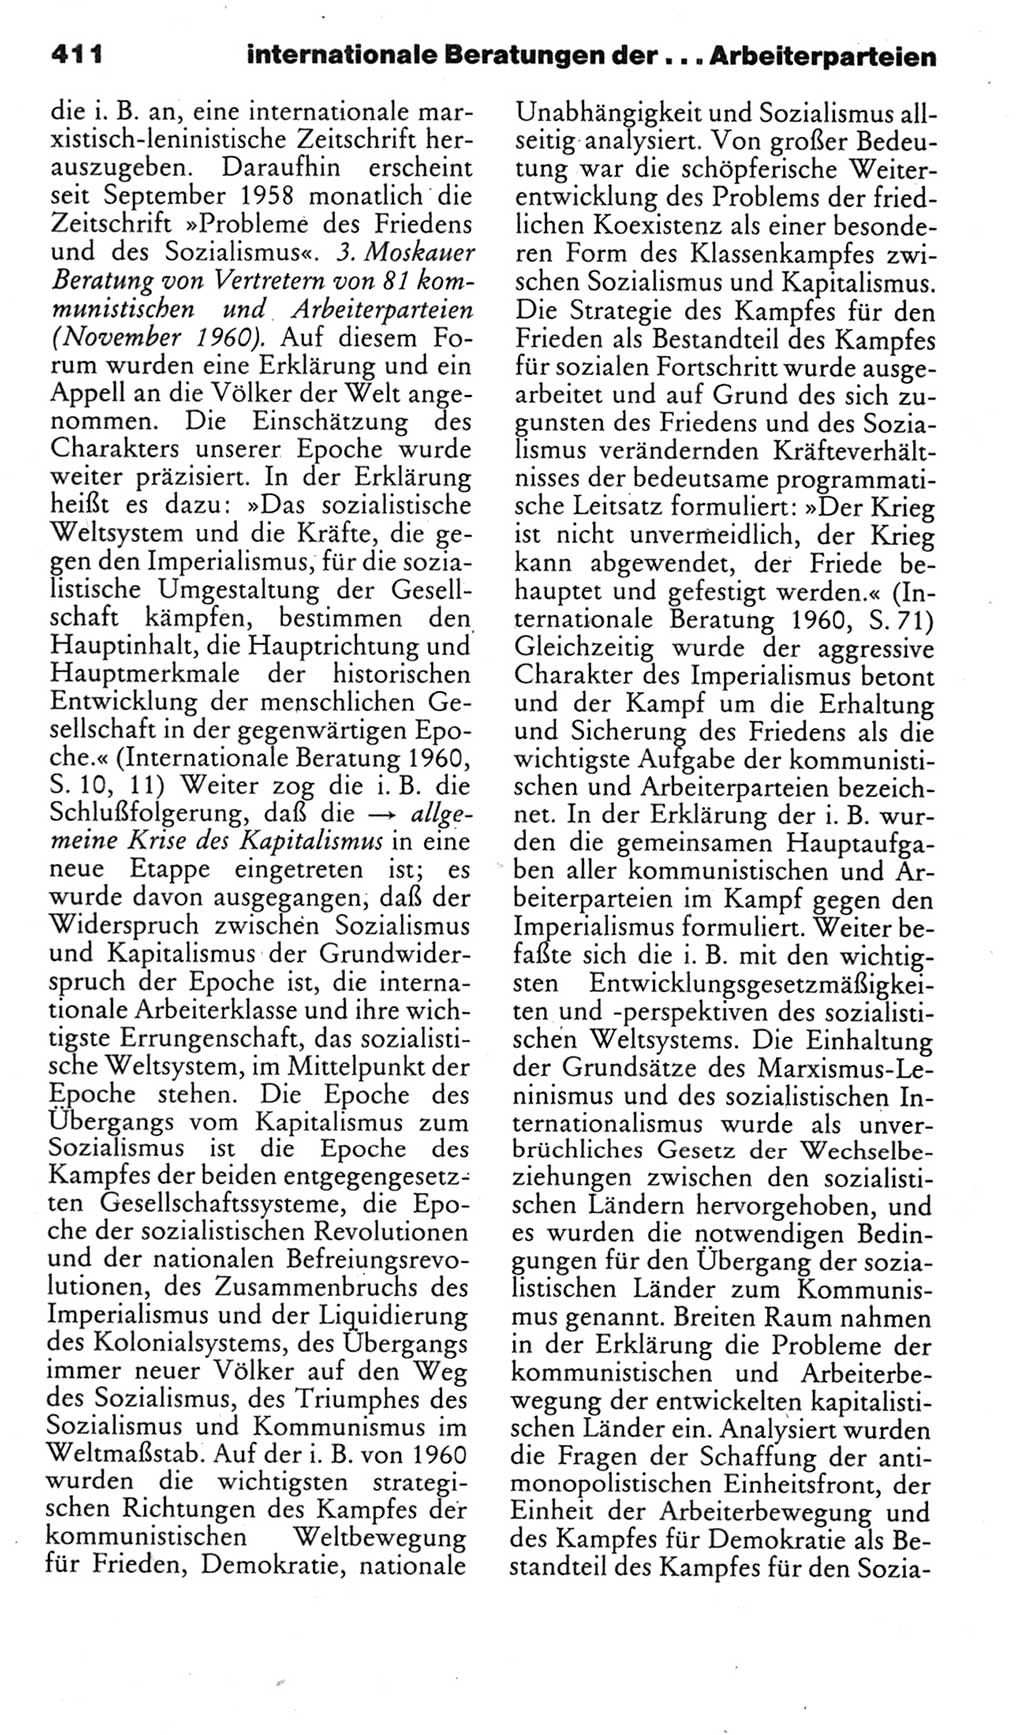 Kleines politisches Wörterbuch [Deutsche Demokratische Republik (DDR)] 1985, Seite 411 (Kl. pol. Wb. DDR 1985, S. 411)